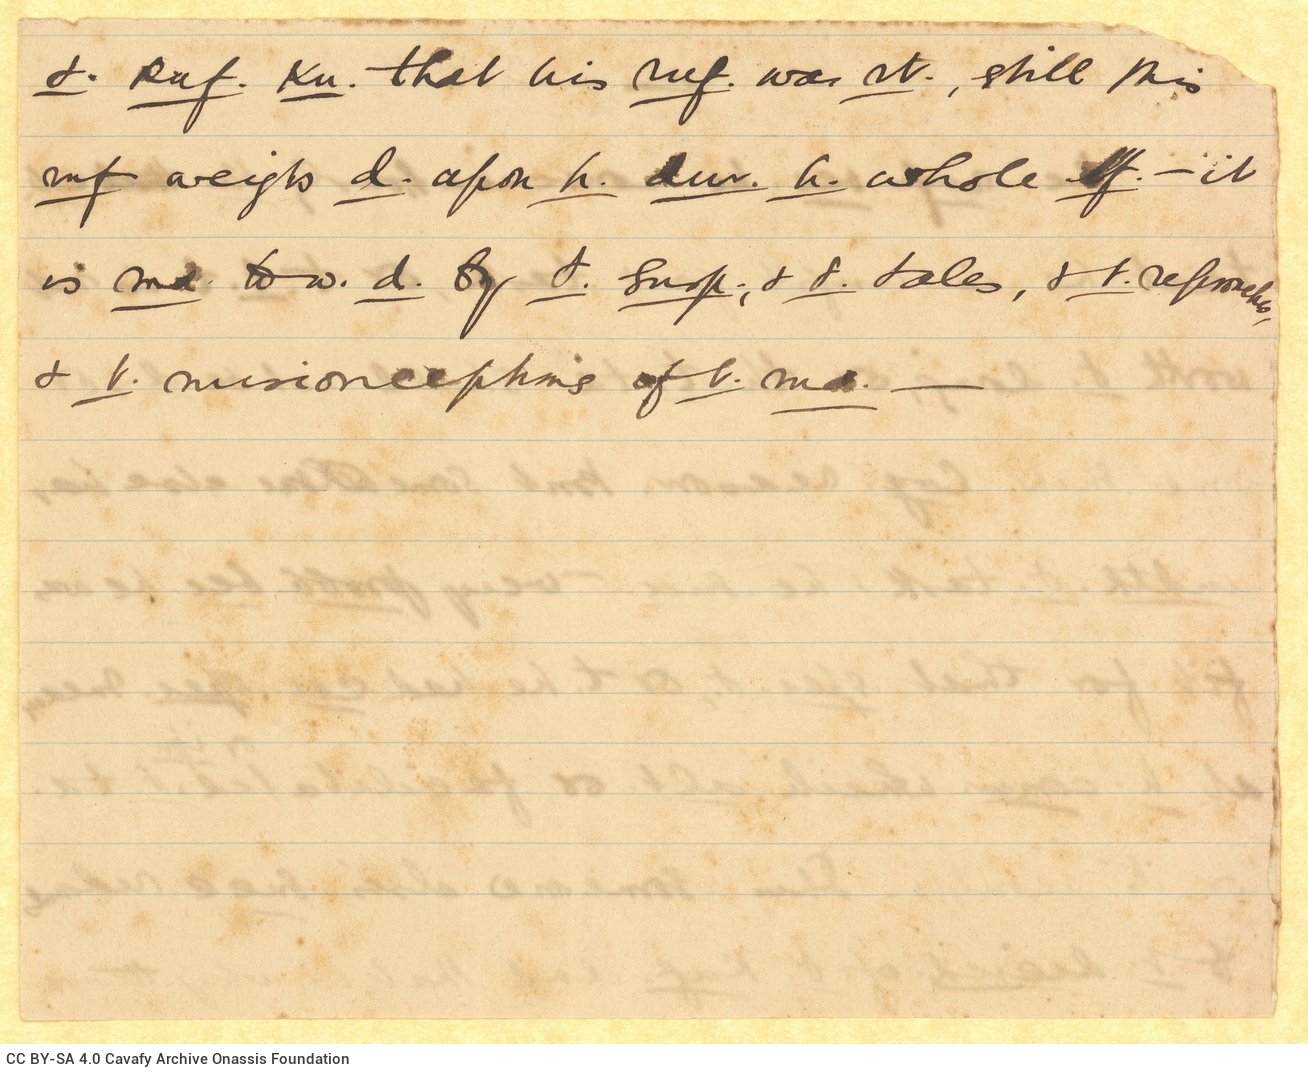 Χειρόγραφες σημειώσεις για το ποίημα «Che fece… il gran rifiutο» στις δύο όψ